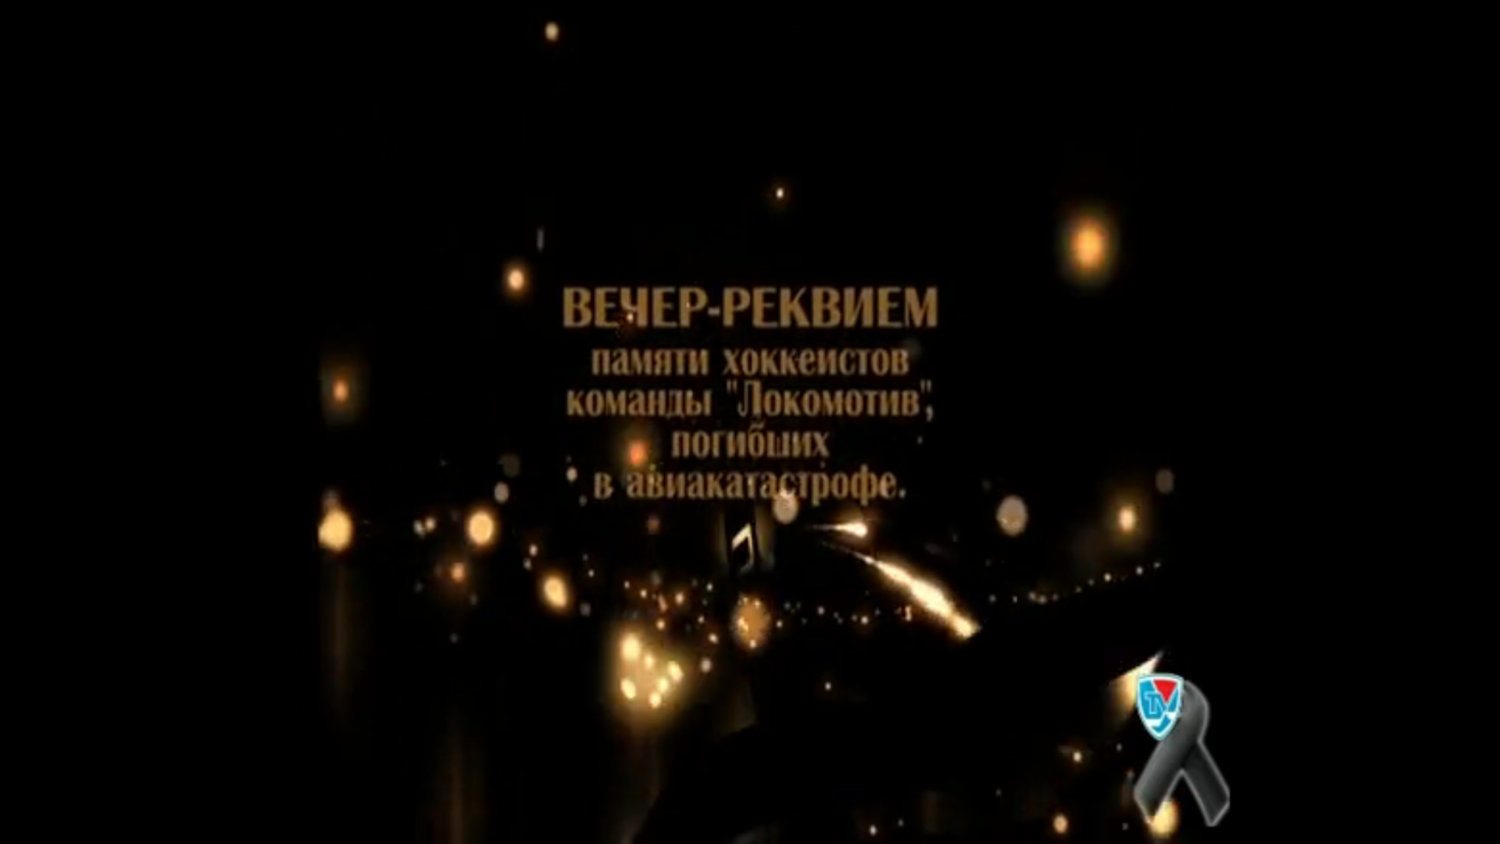 Вечер-реквием памяти ХК "Локомотив". 8 сентября 2011